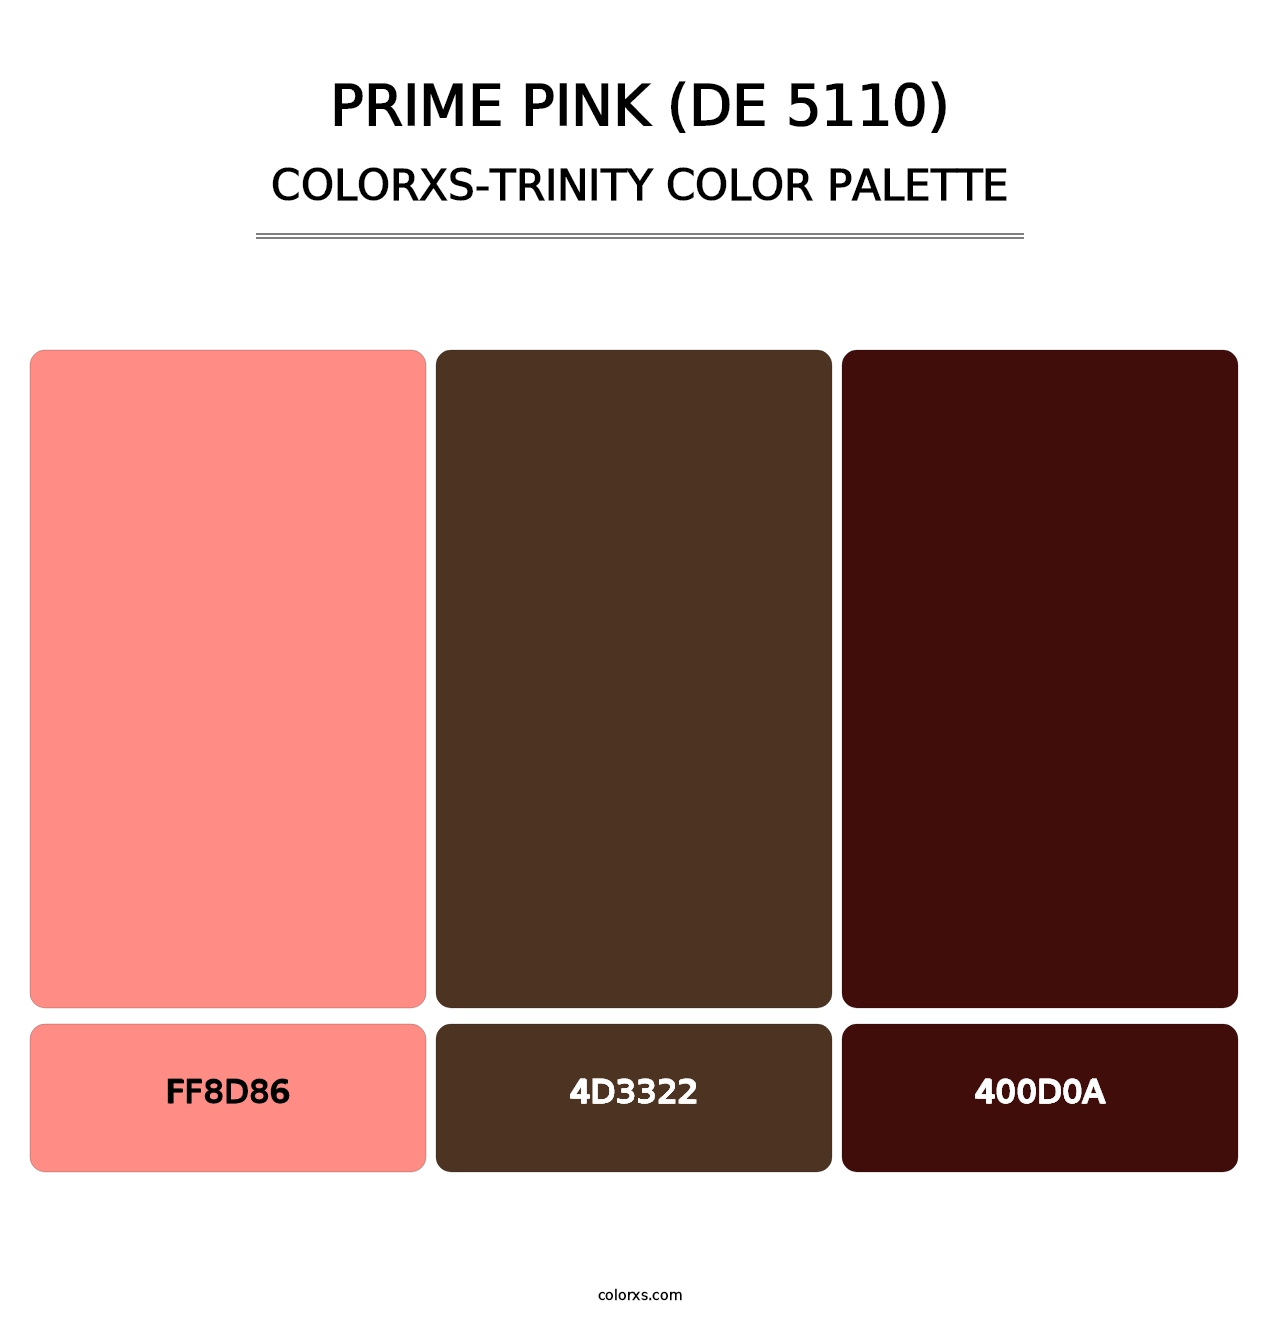 Prime Pink (DE 5110) - Colorxs Trinity Palette